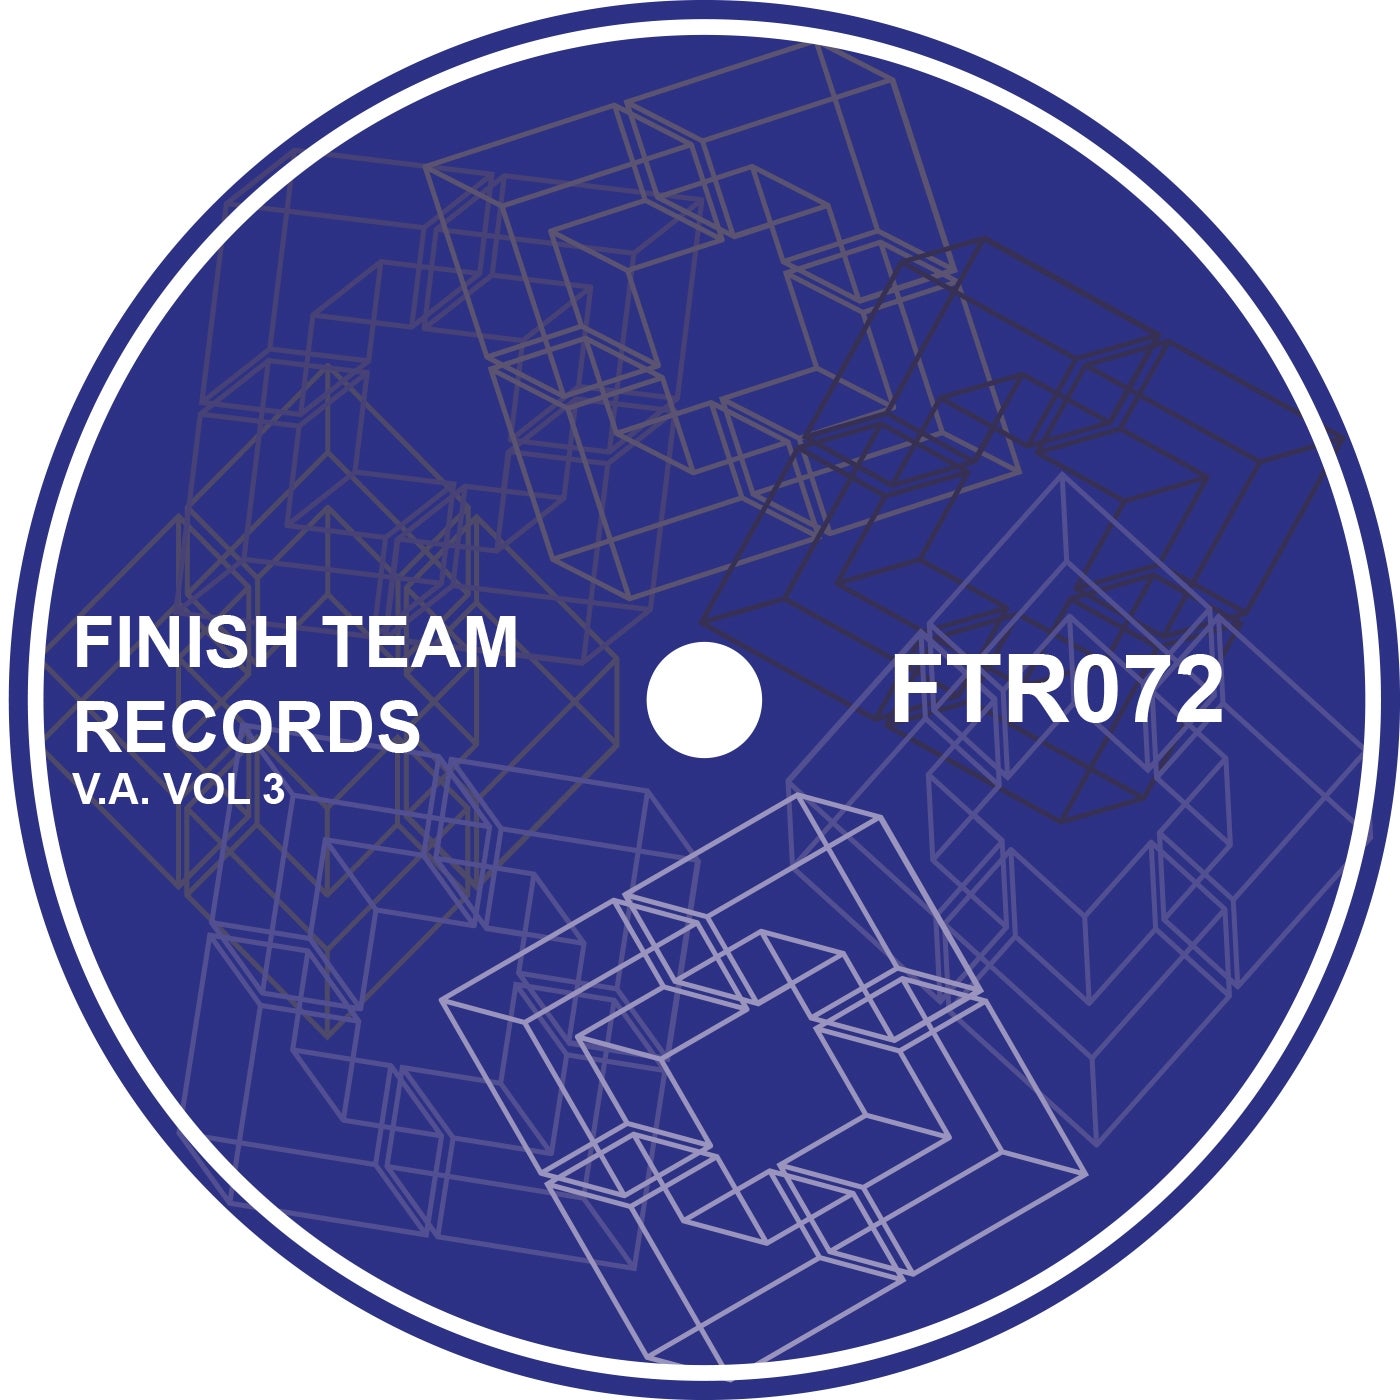 Finish Team Records V.A. Vol 3